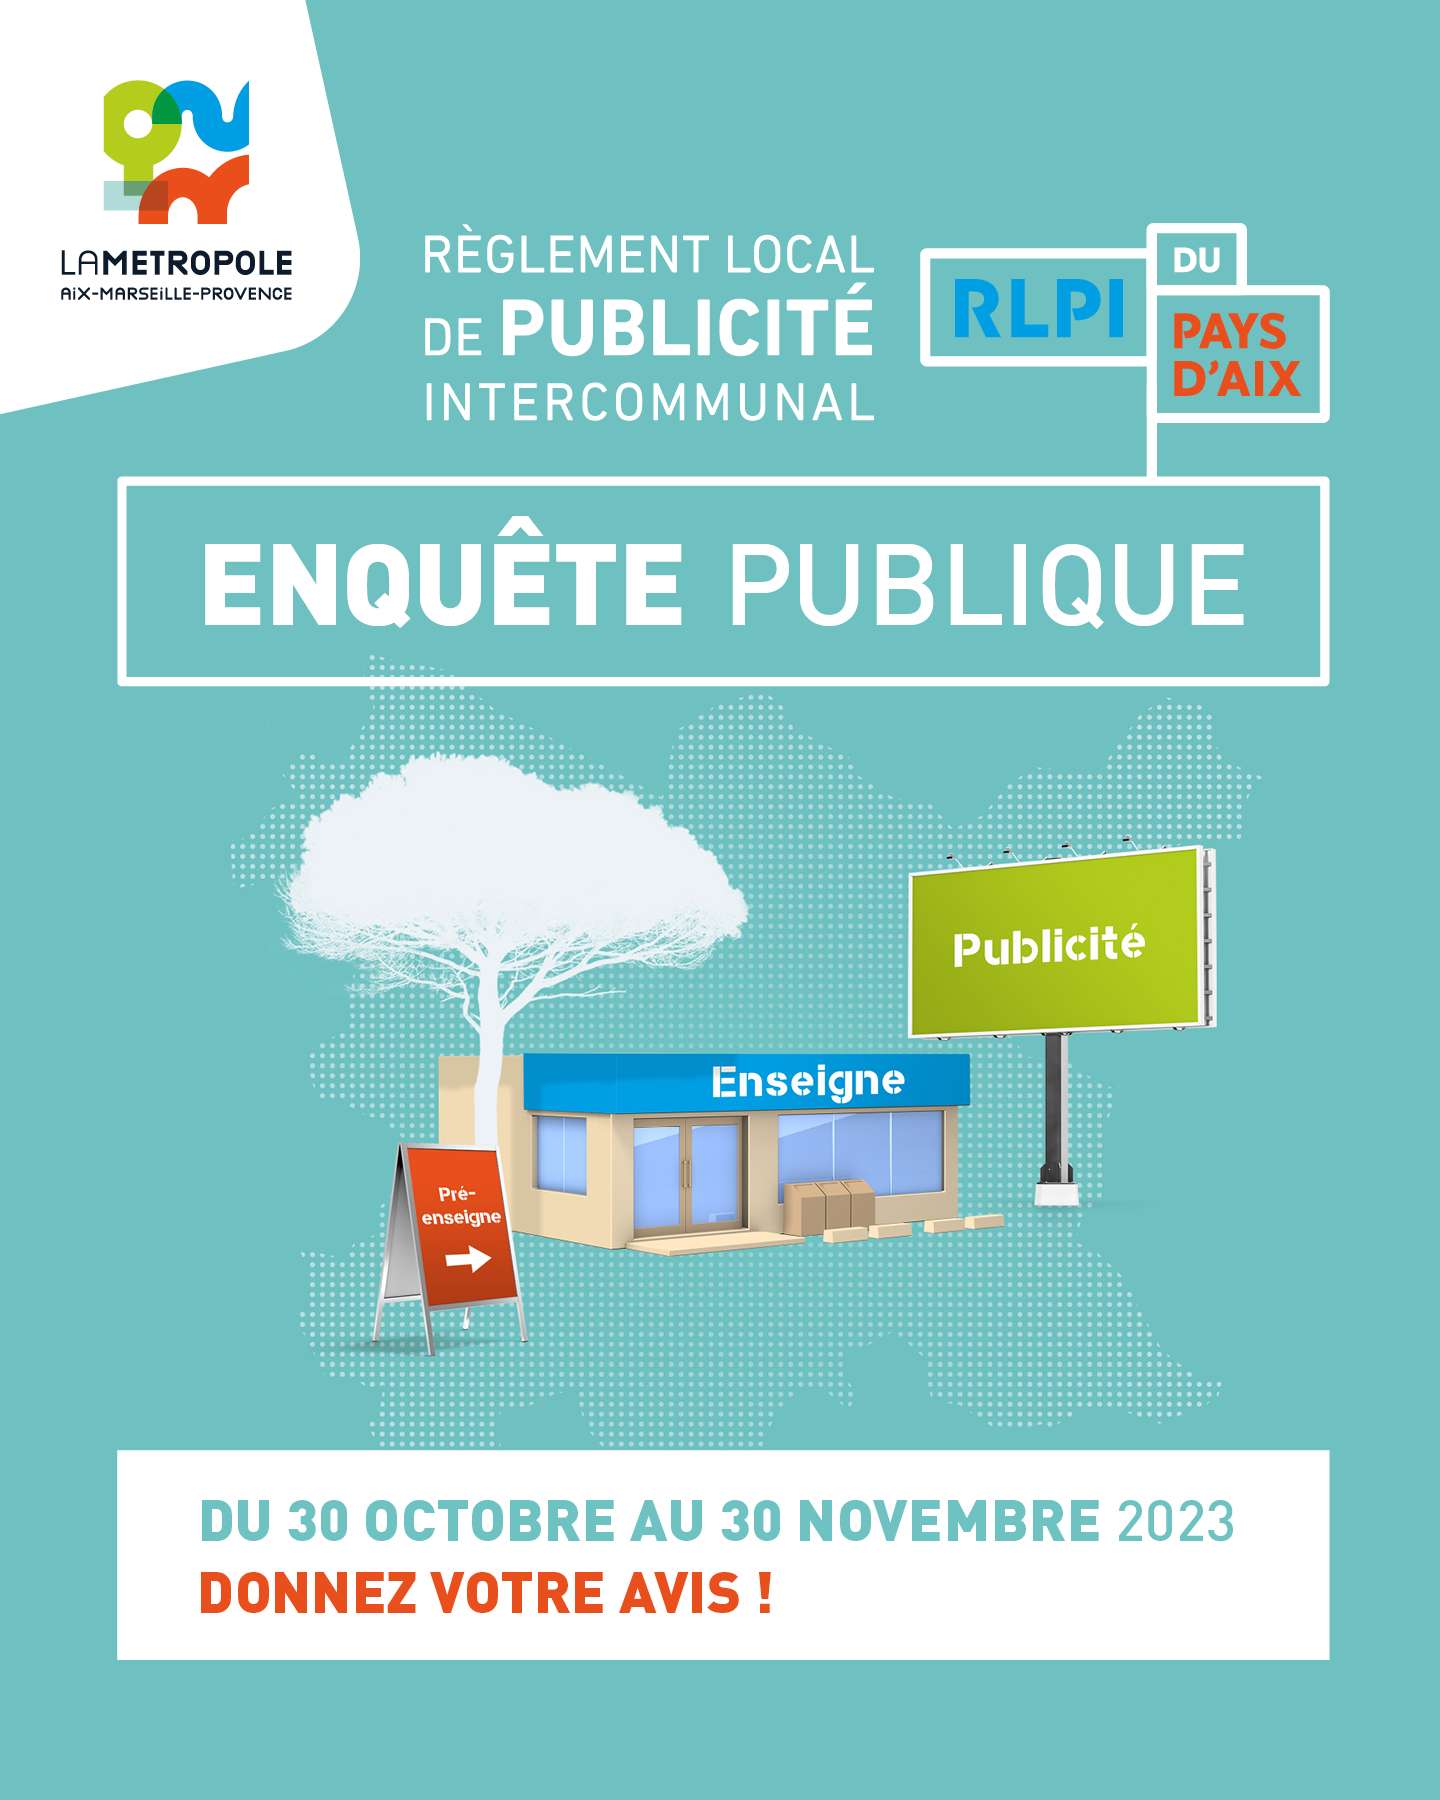   Règlement Local de Publicité intercommunal (RLPi) du Pays d’Aix